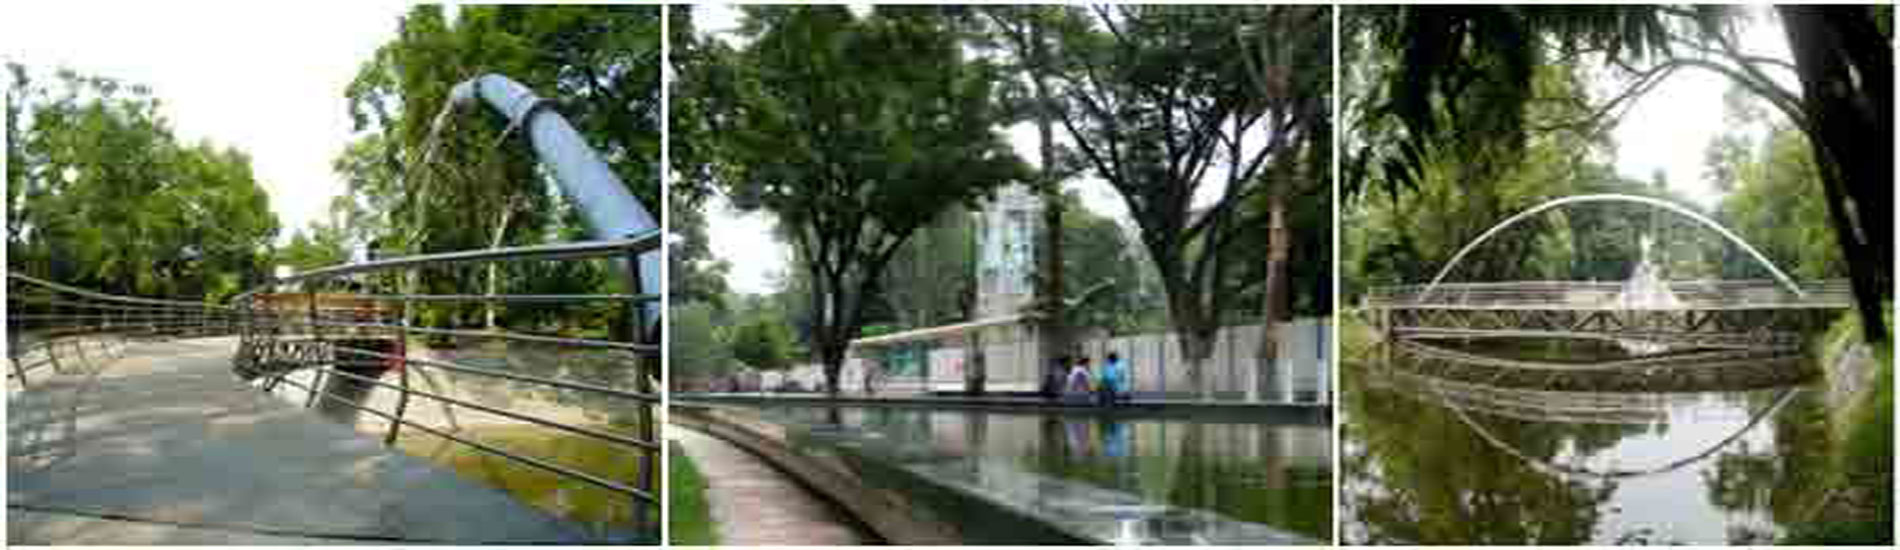 2. Rajshahi Park